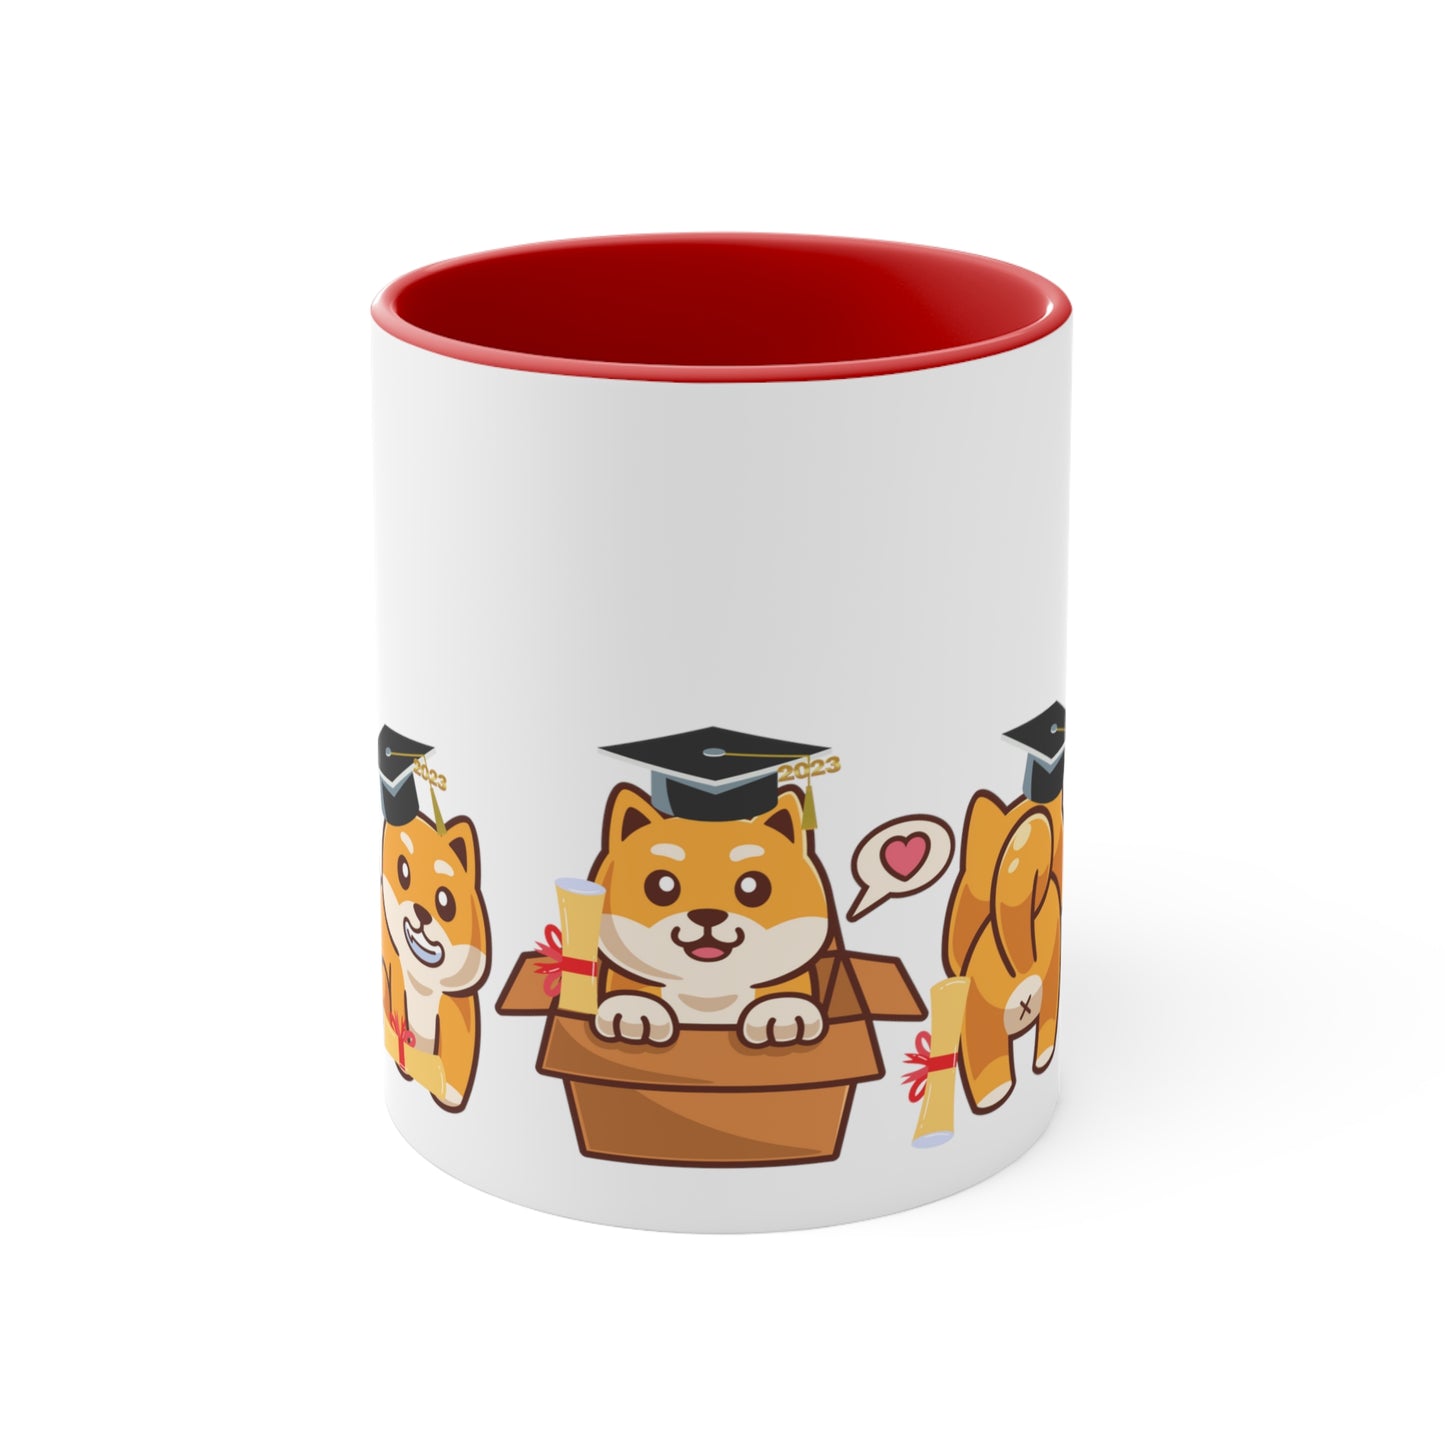 Graduation Accent Mugs, Cute Dog Mug, Cute Puppies, Cute Pup, Cute Animal Mug, Cute Coffee Mug